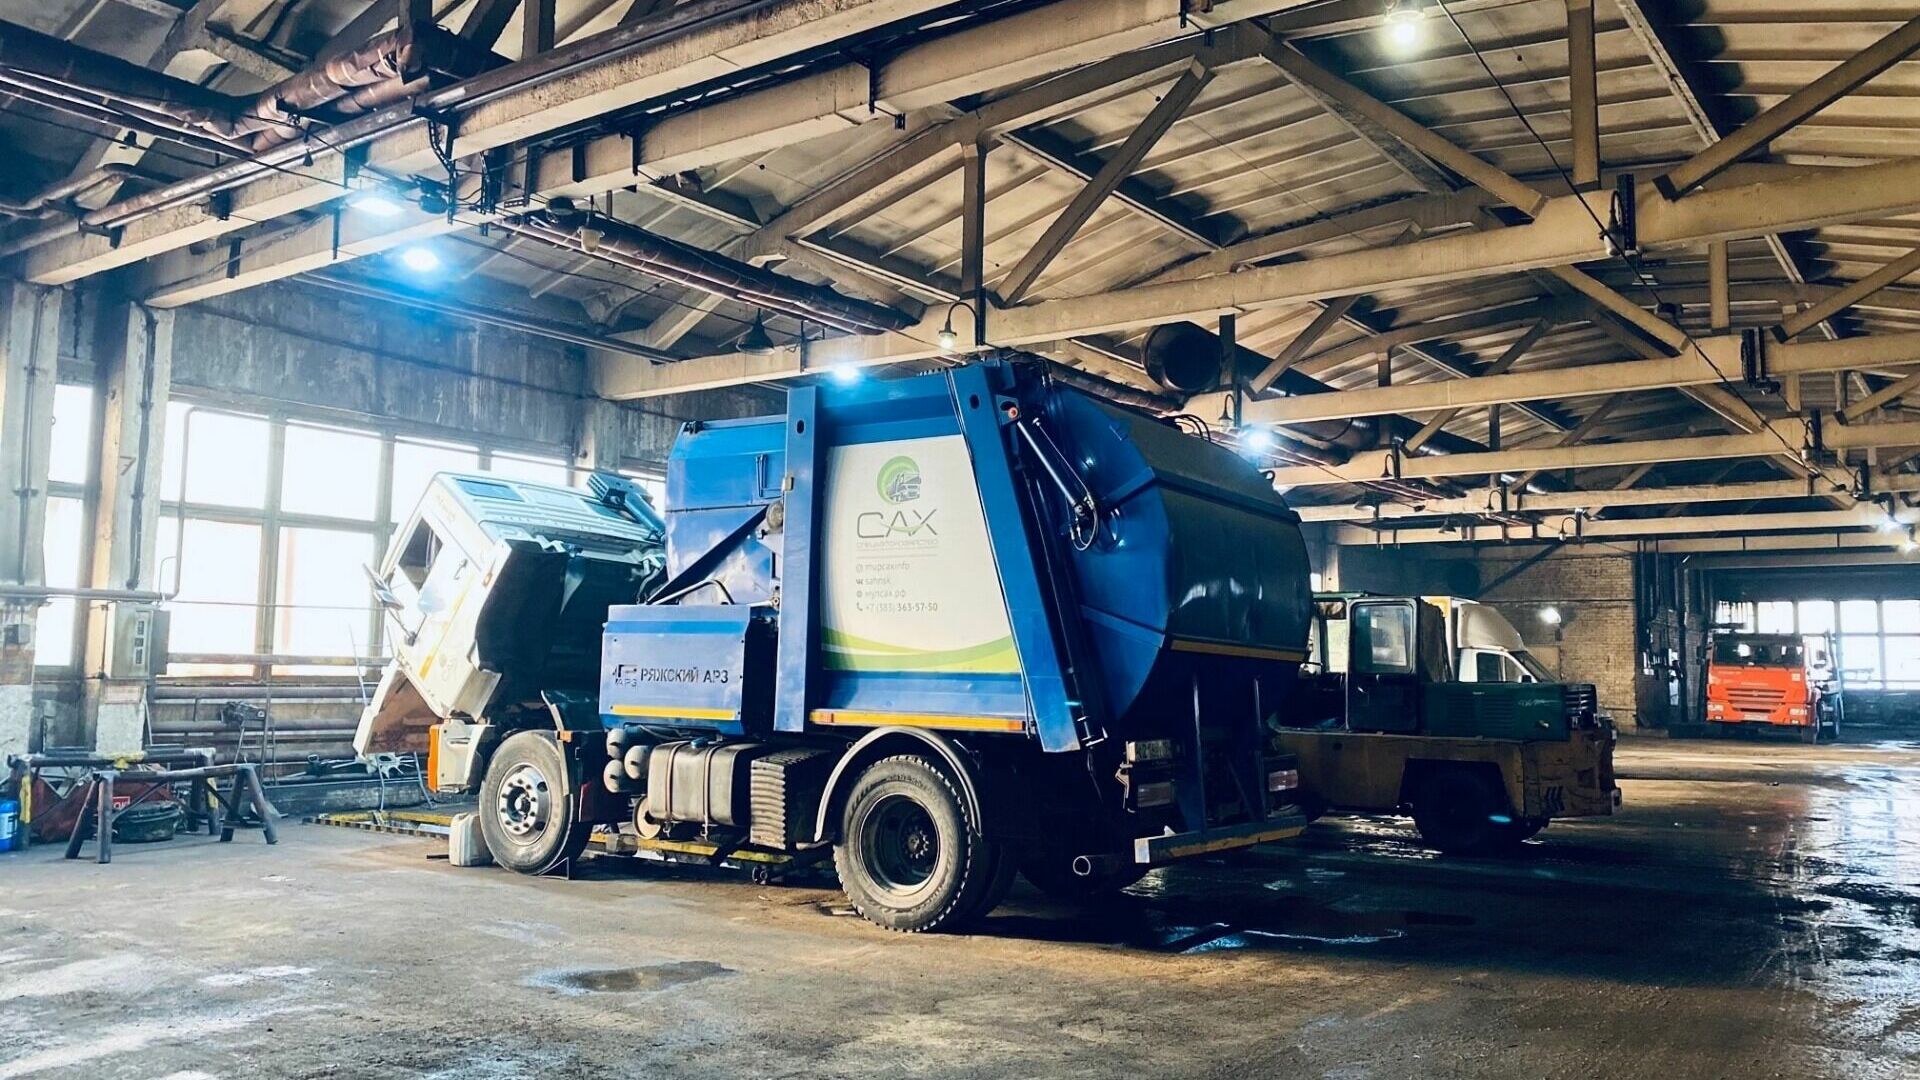 Транспорт МУП "Спецавтохозяйство", который работает на вывозе мусора в Новосибирской области.